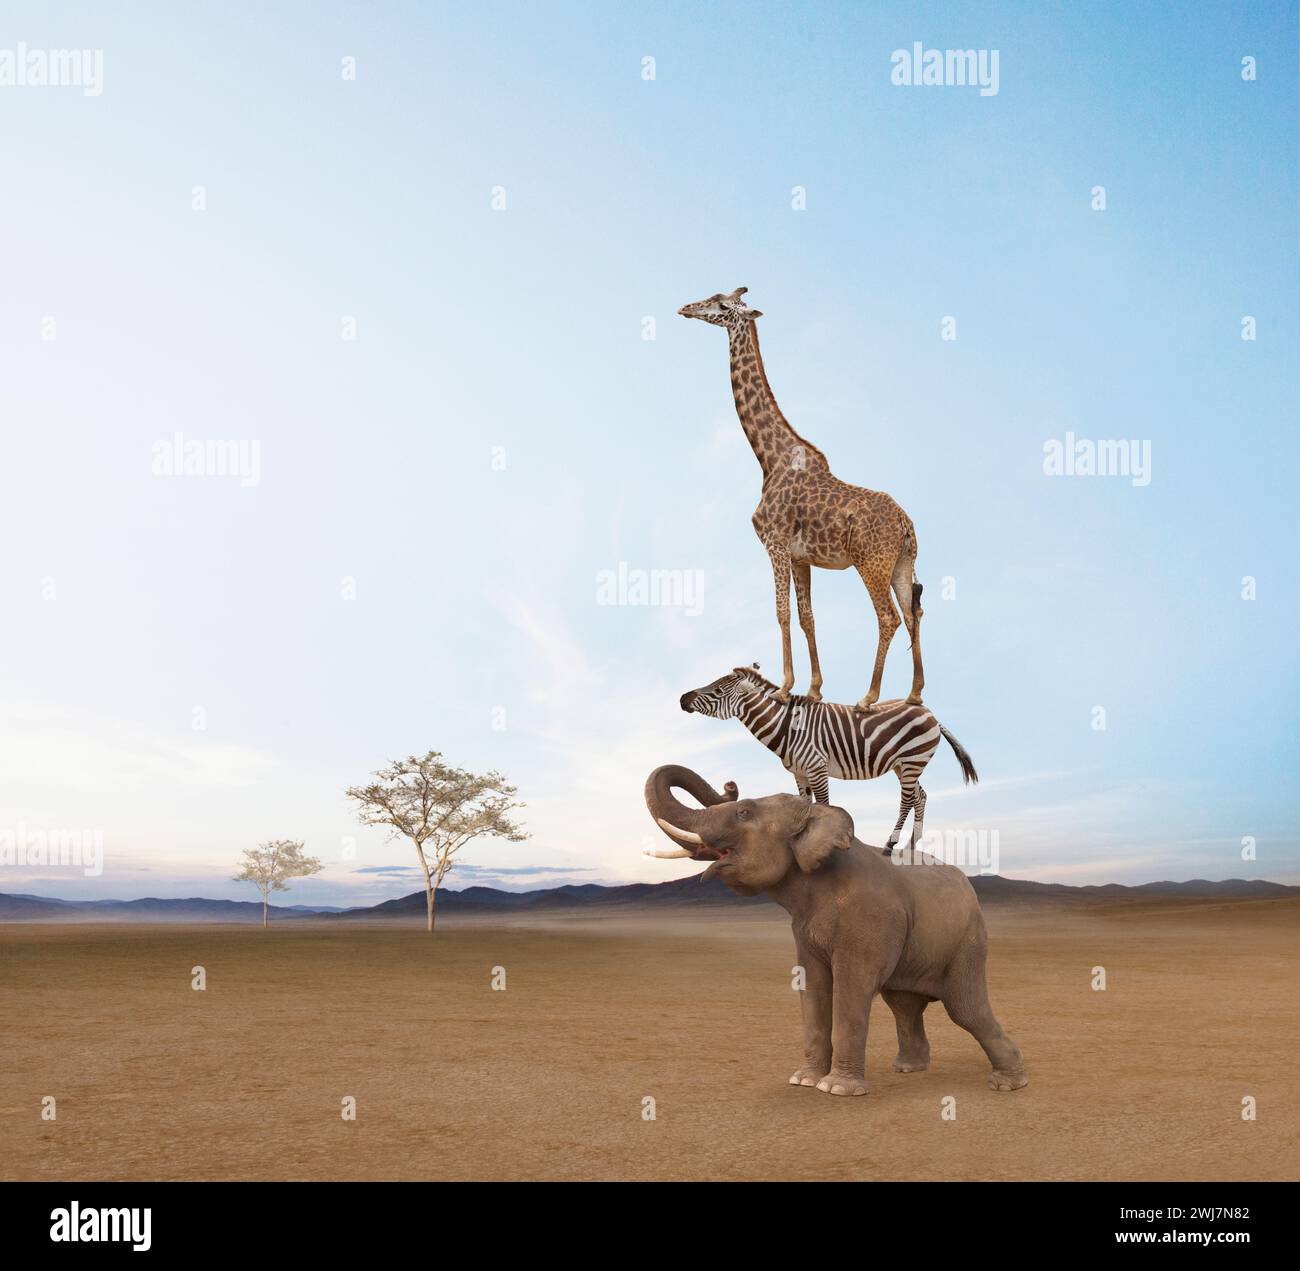 Une girafe se tient sur le dos d'un zèbre qui se tient sur le dos d'un éléphant dans une image sur le travail d'équipe, la vision et la coopération. Banque D'Images